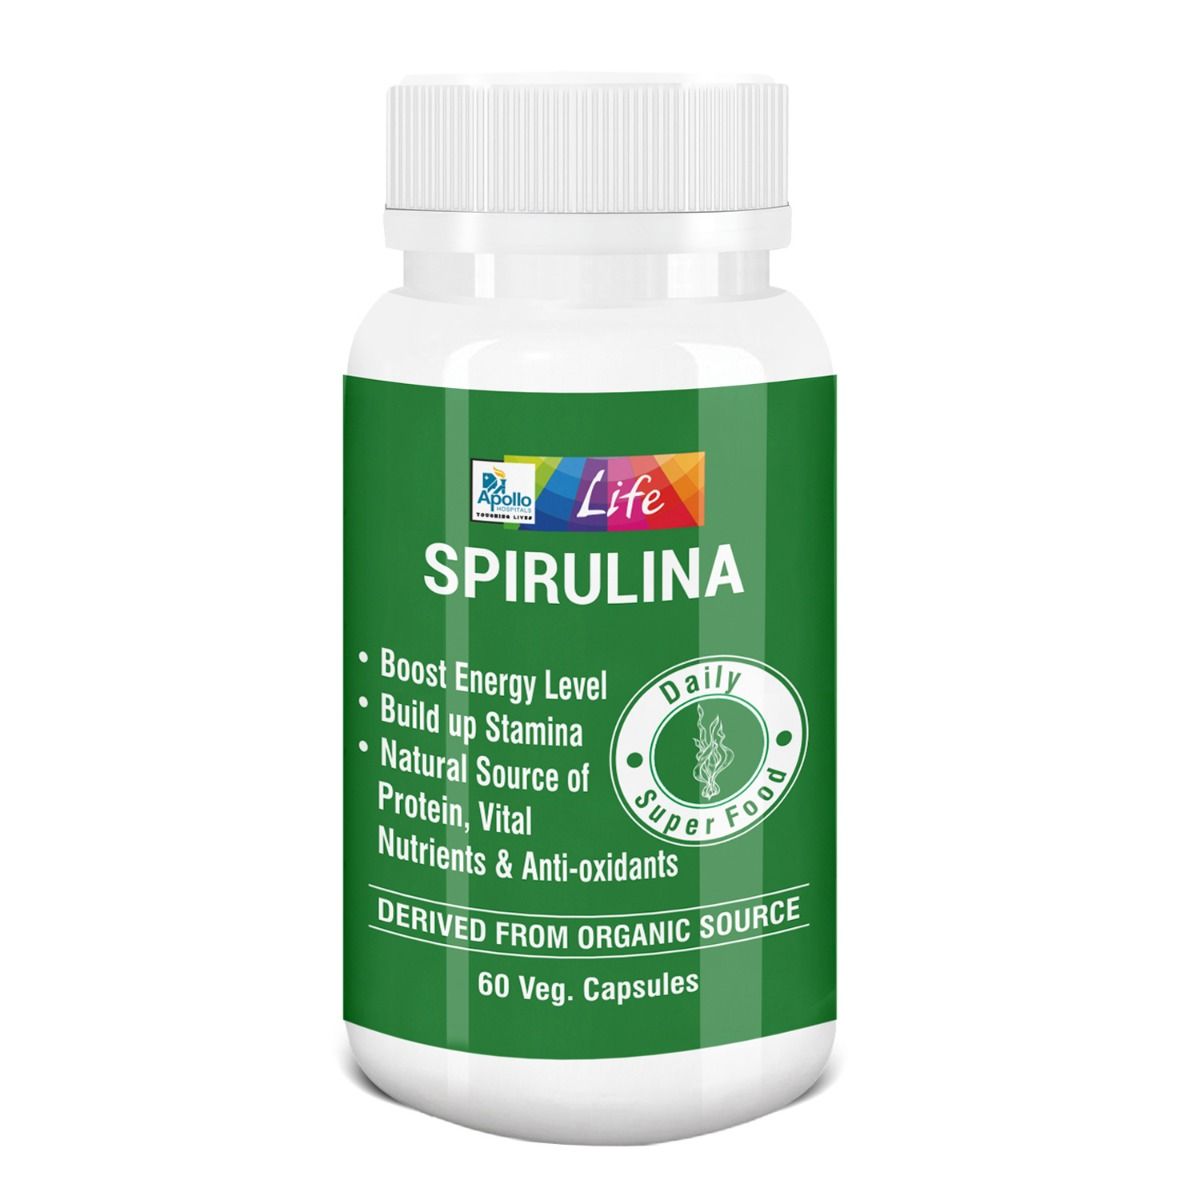 Apollo Life Organic Spirulina, 60 Capsules, Pack of 1 